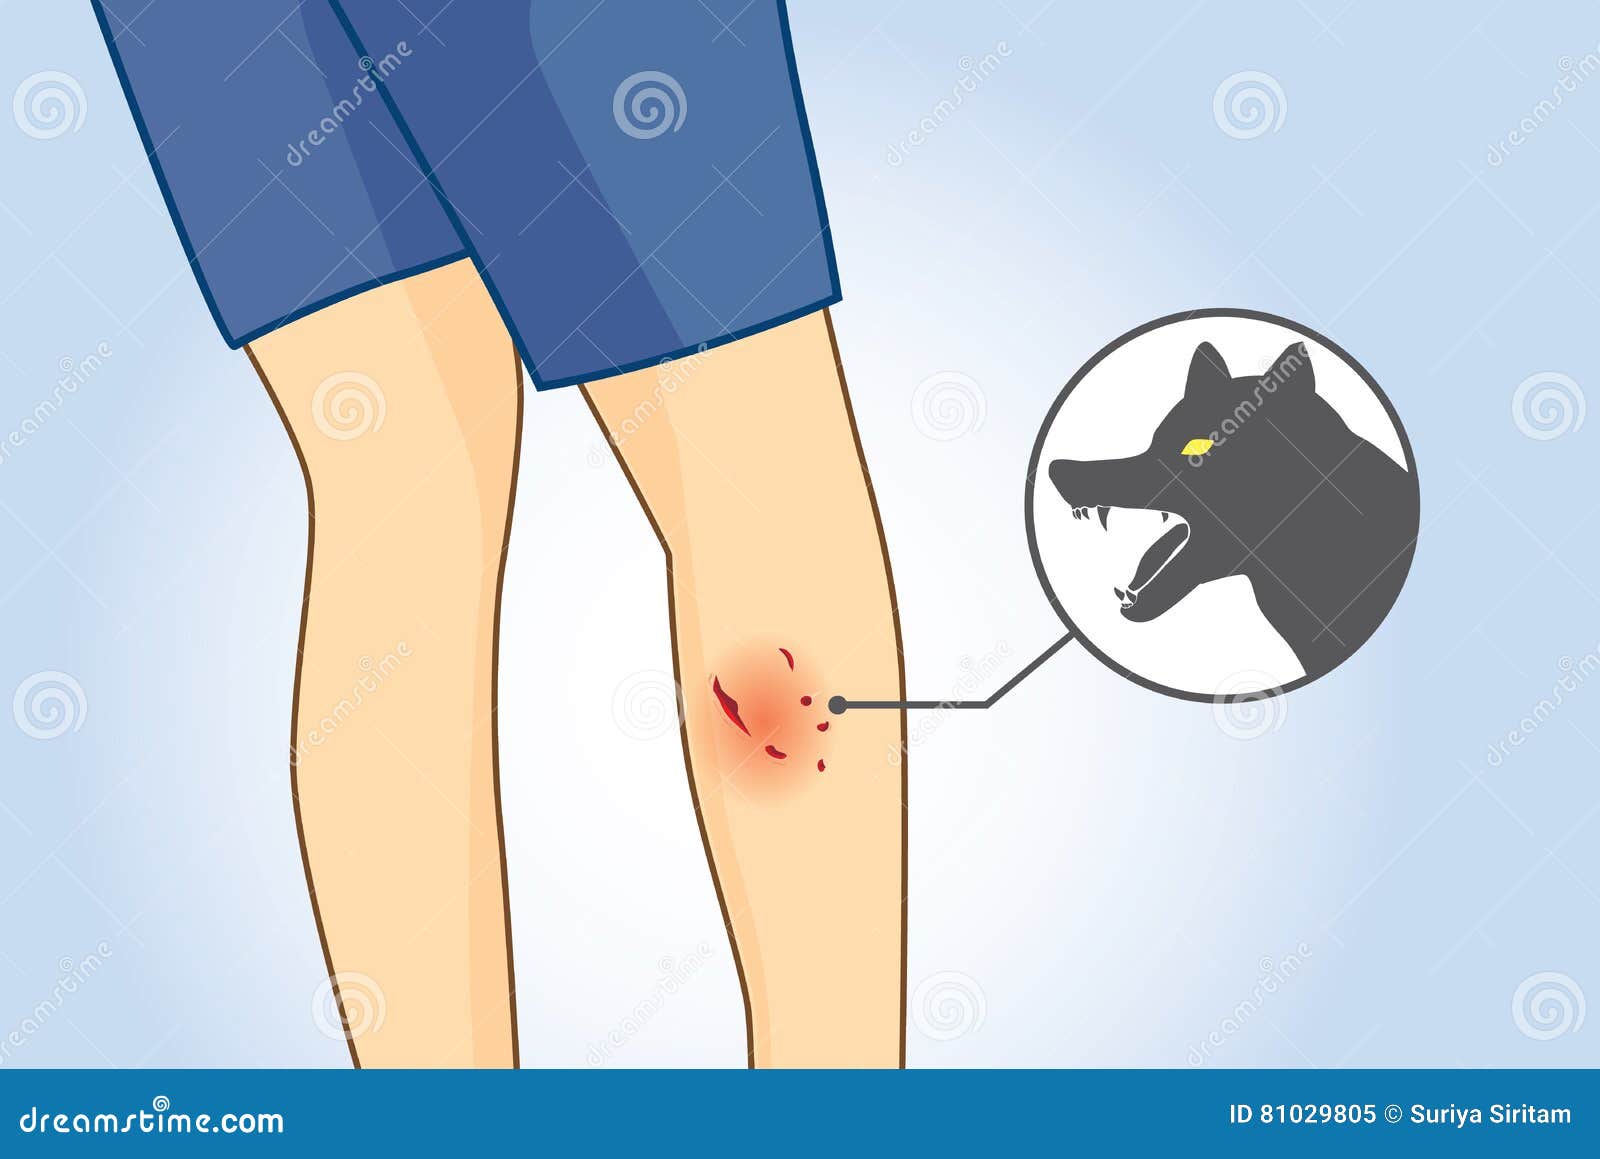 How Do You Treat A Dog Bite Wound